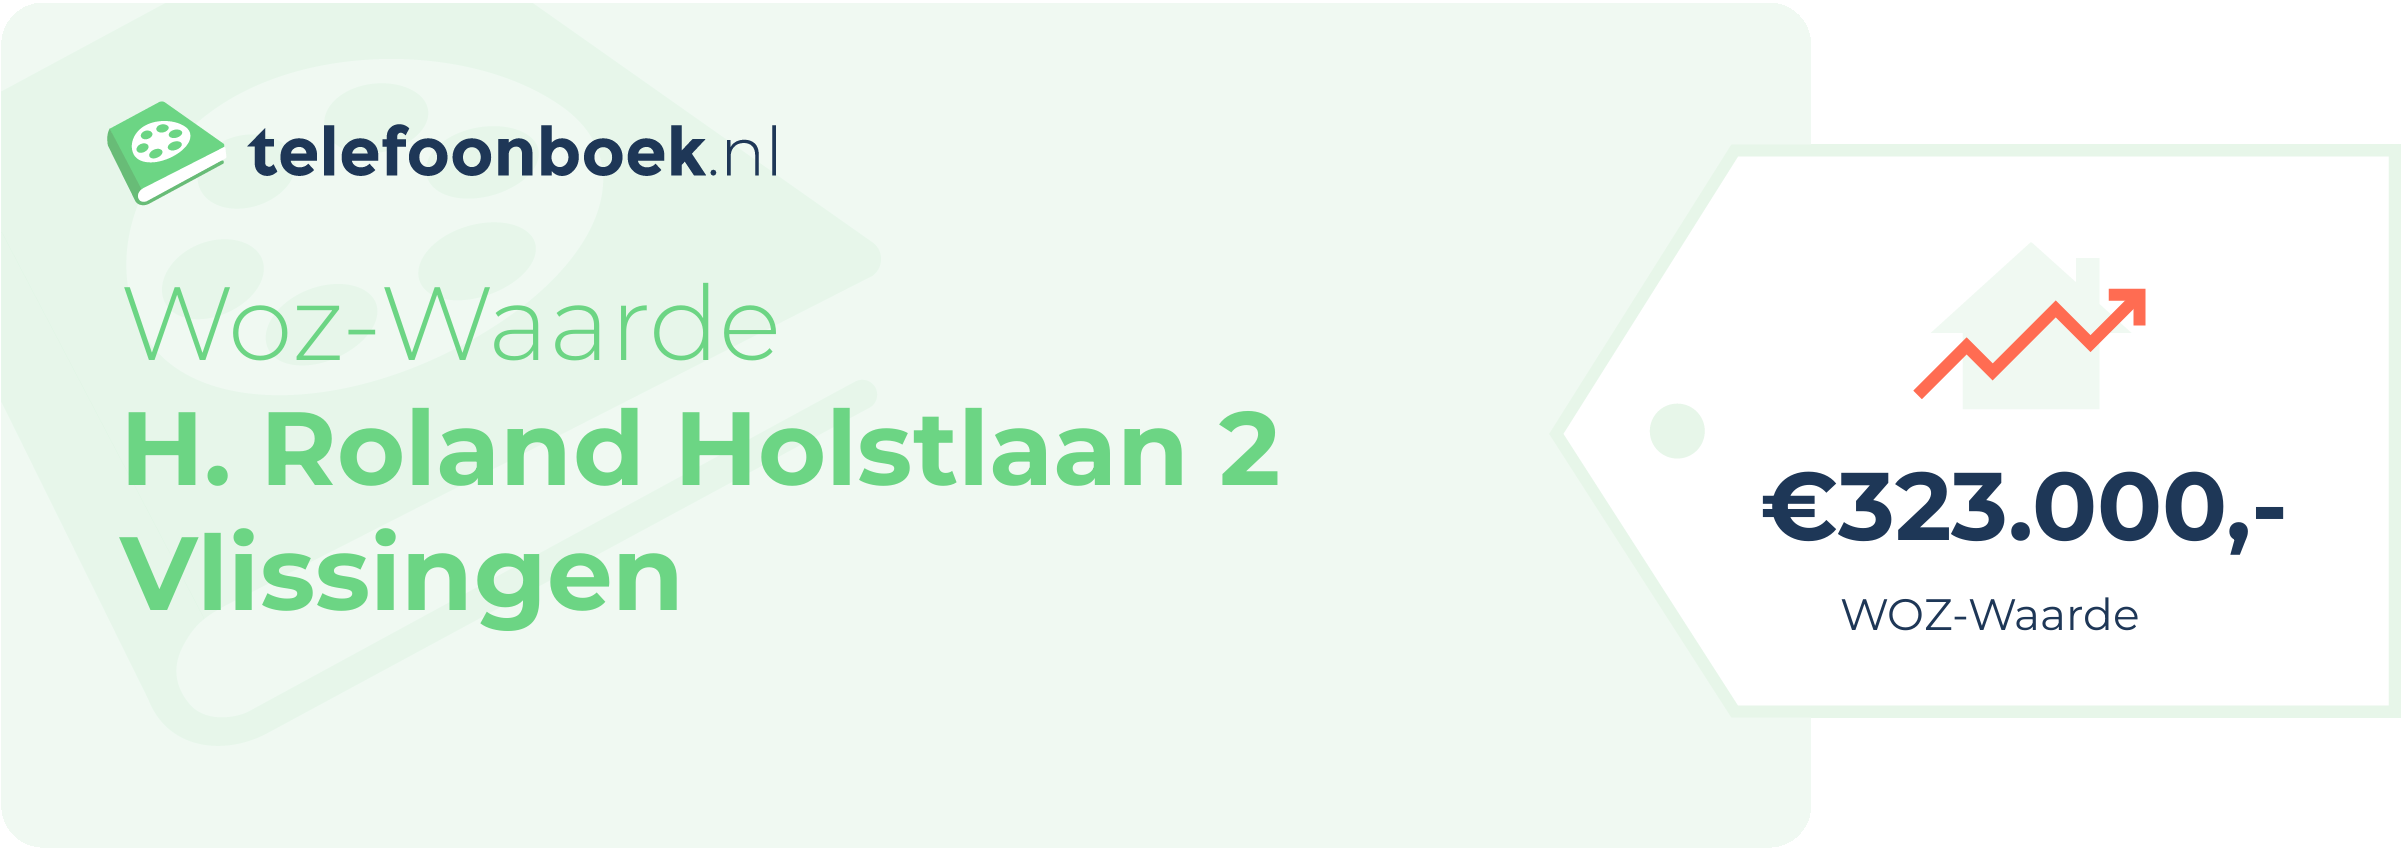 WOZ-waarde H. Roland Holstlaan 2 Vlissingen